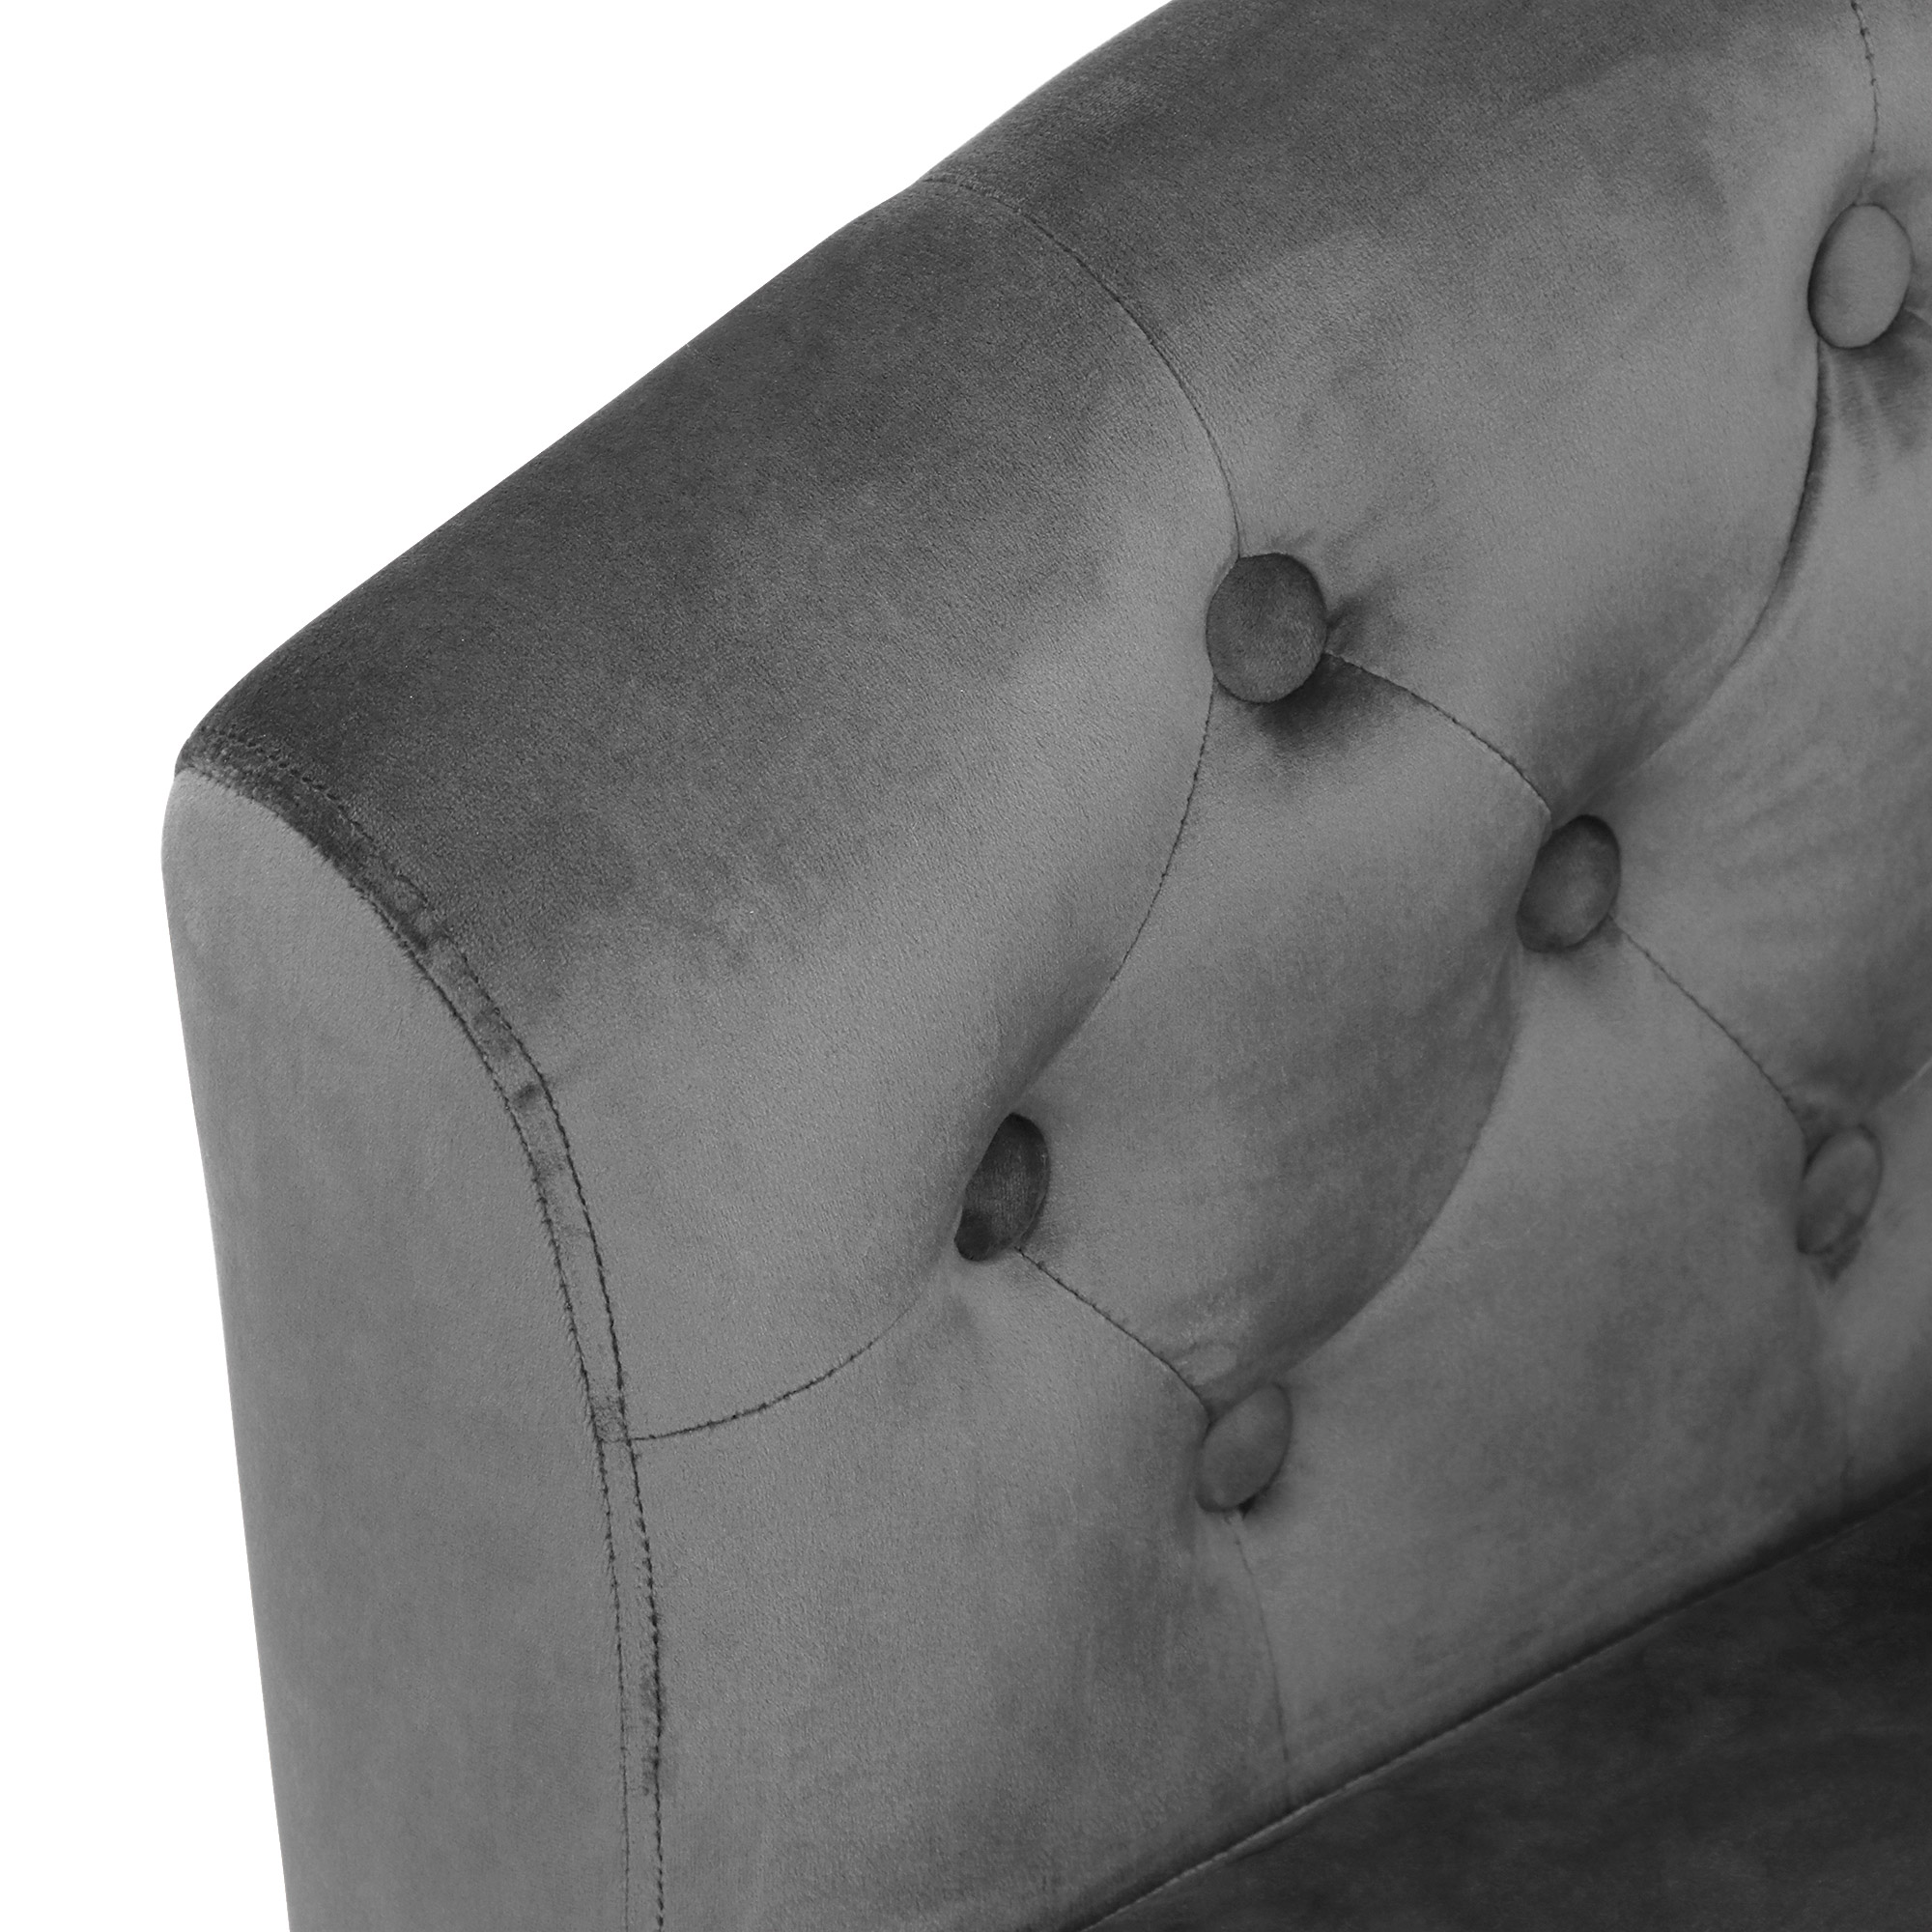 Кресло Shanshi Оливия серое 72x63x71cm, цвет серый - фото 5